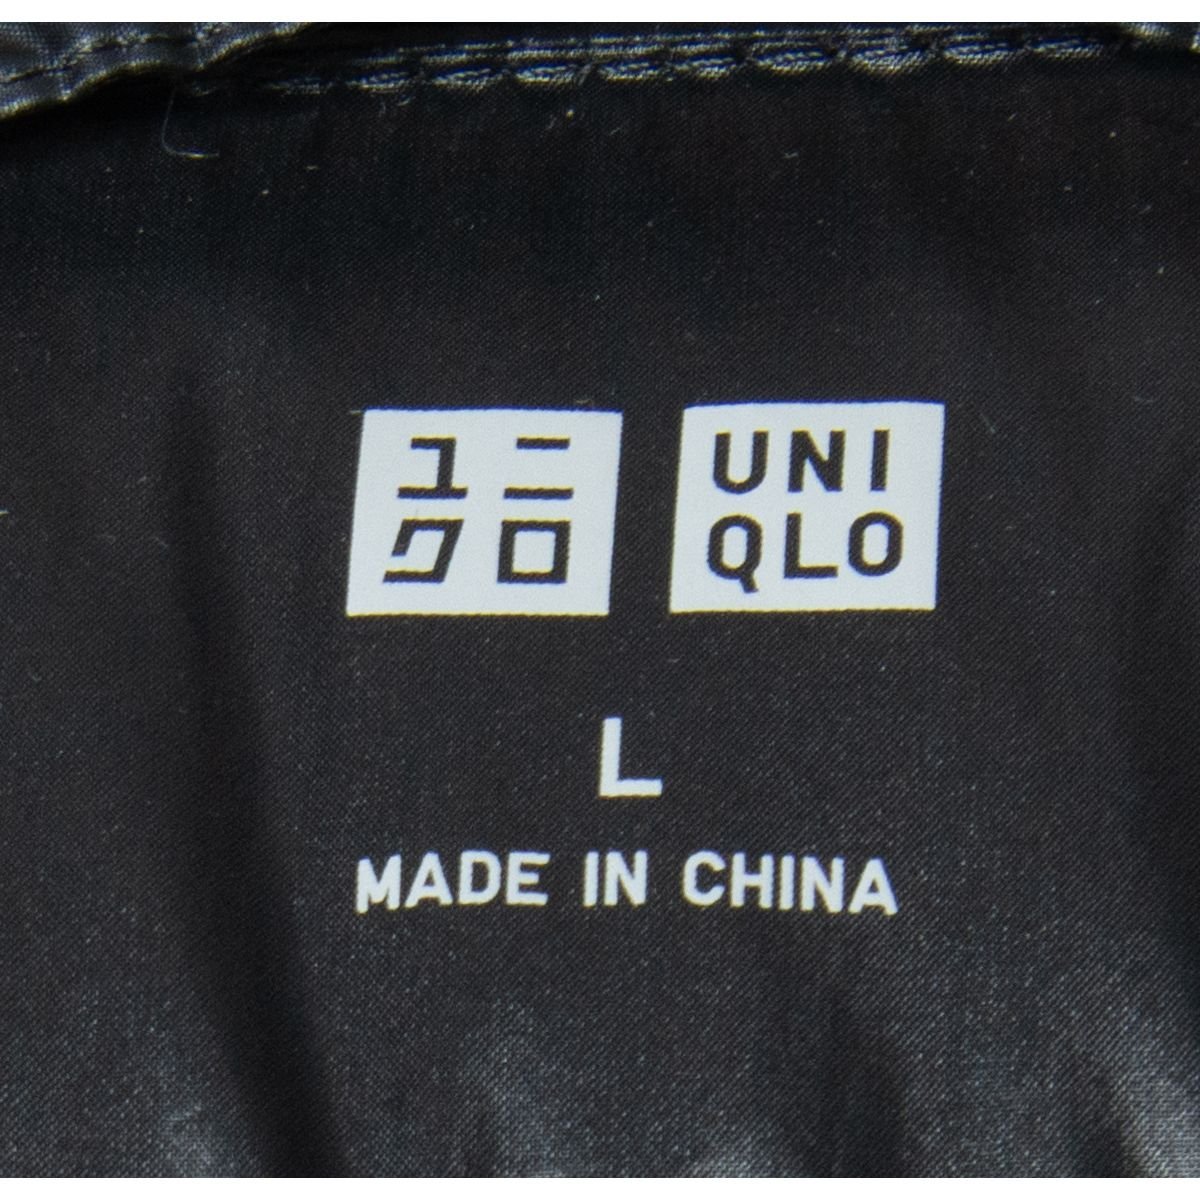 UNIQLO ユニクロ ジップアップ ダウンジャケット フード サイズL ナイロン 黒/ブラック 軽量 防寒 メンズ 秋冬 アウター シンプル_画像5